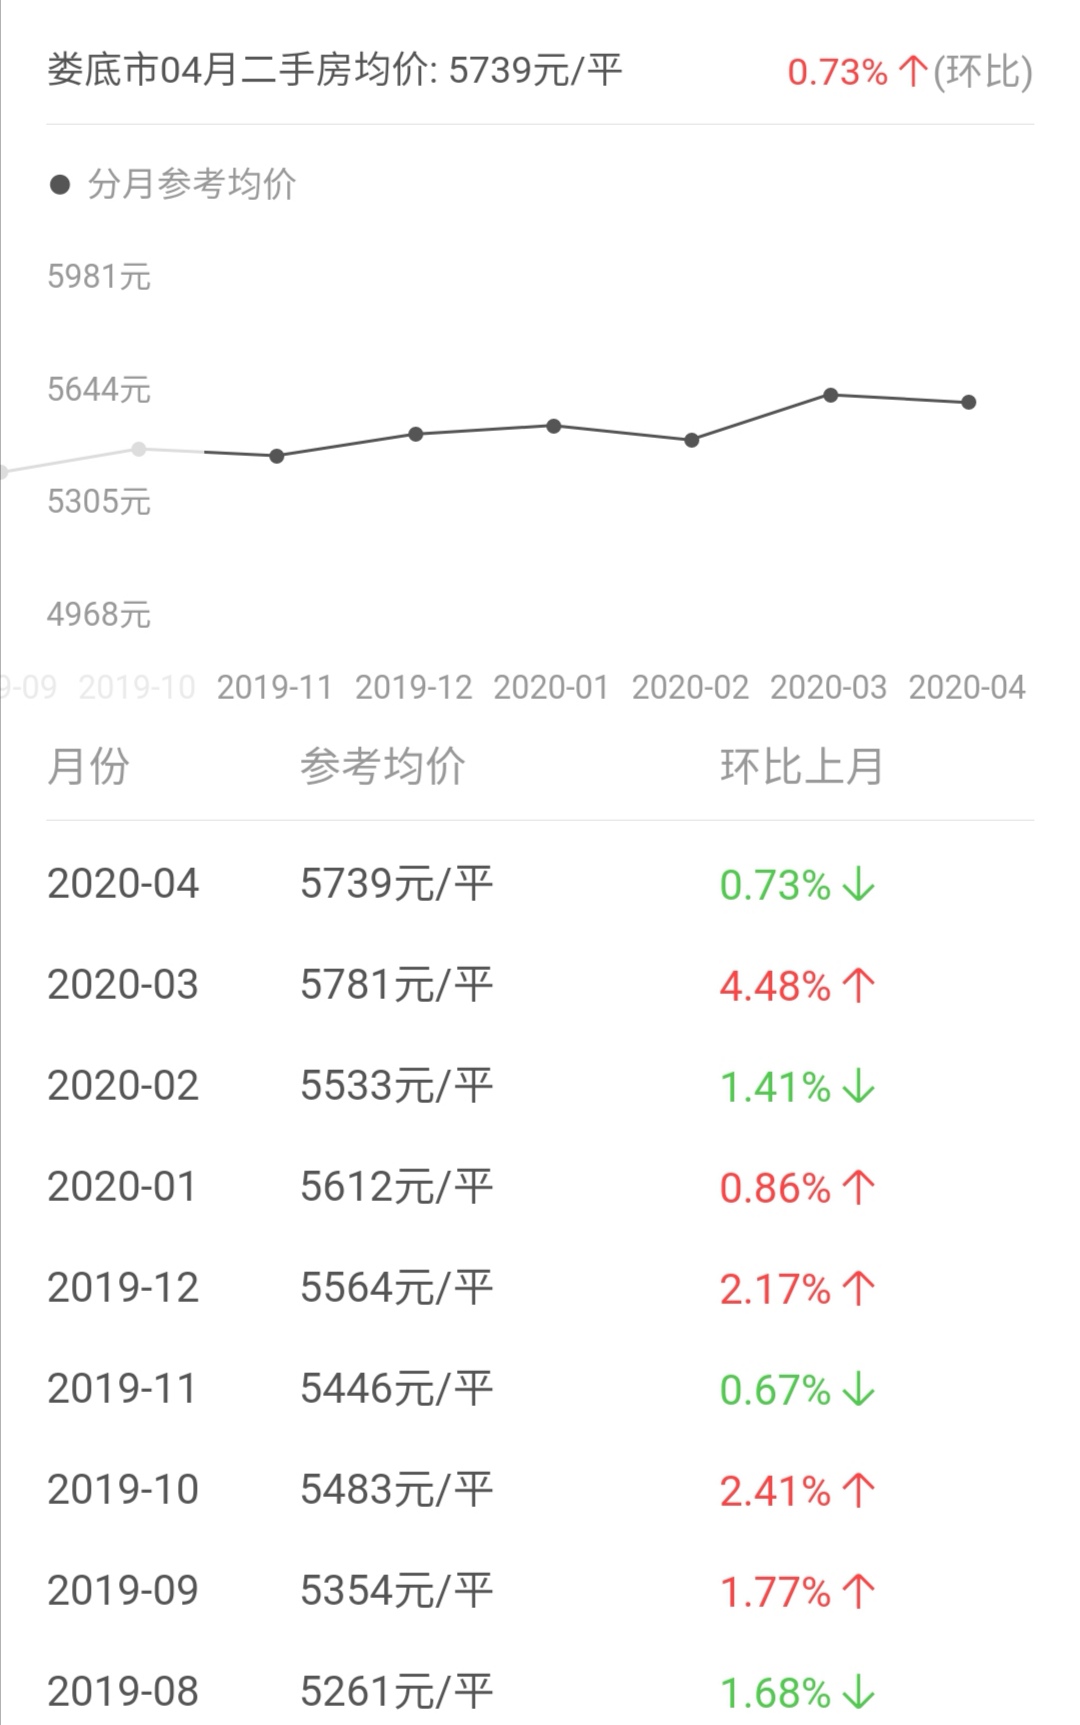 中国主要地级市房价-娄底篇 2021年房价变化趋势